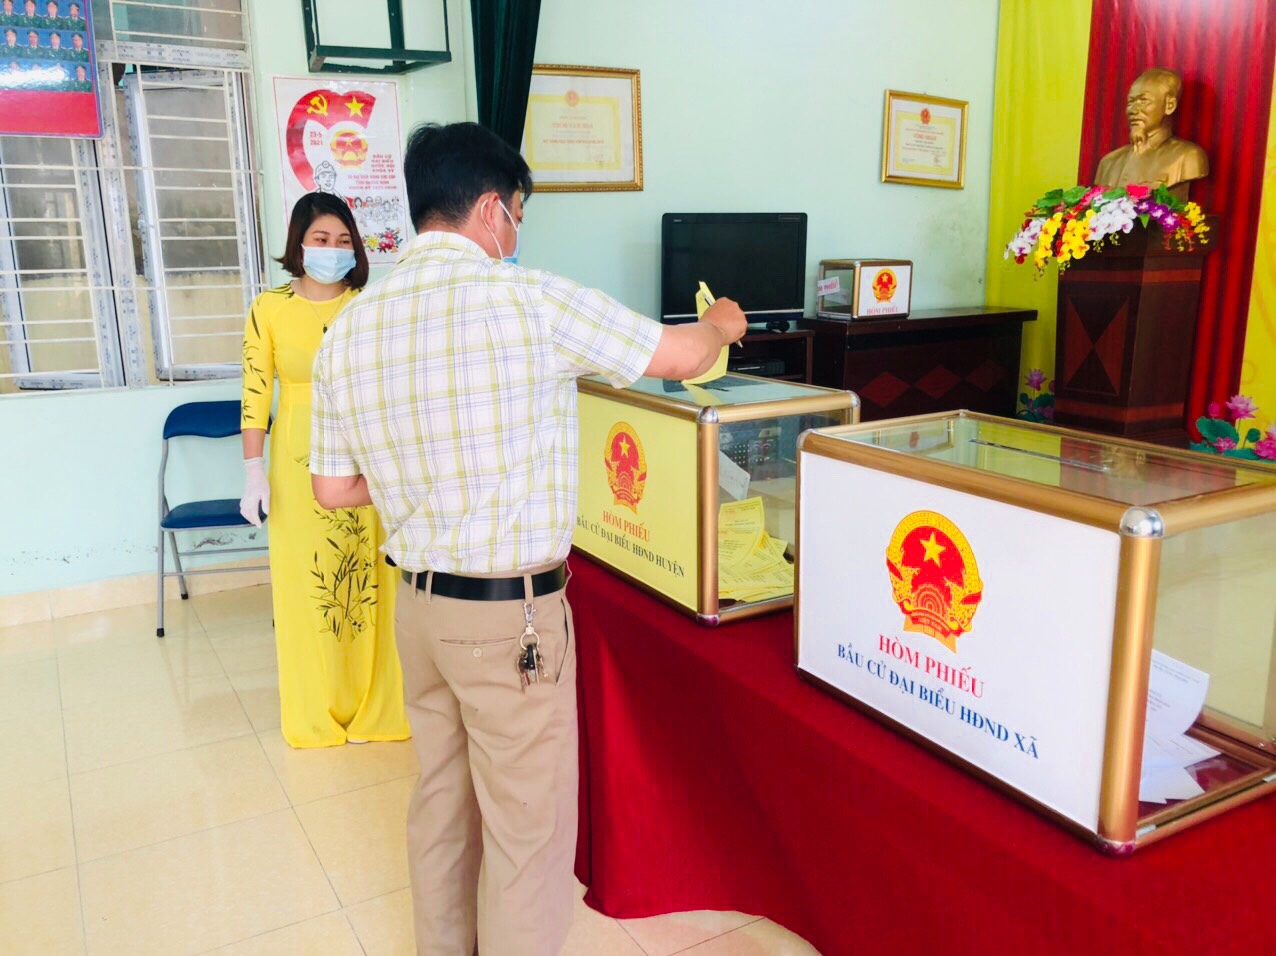 Quảng Ninh chuyển cả hòm phiếu lưu động tới giường bệnh cho bệnh nhân bỏ phiếu - Ảnh 13.